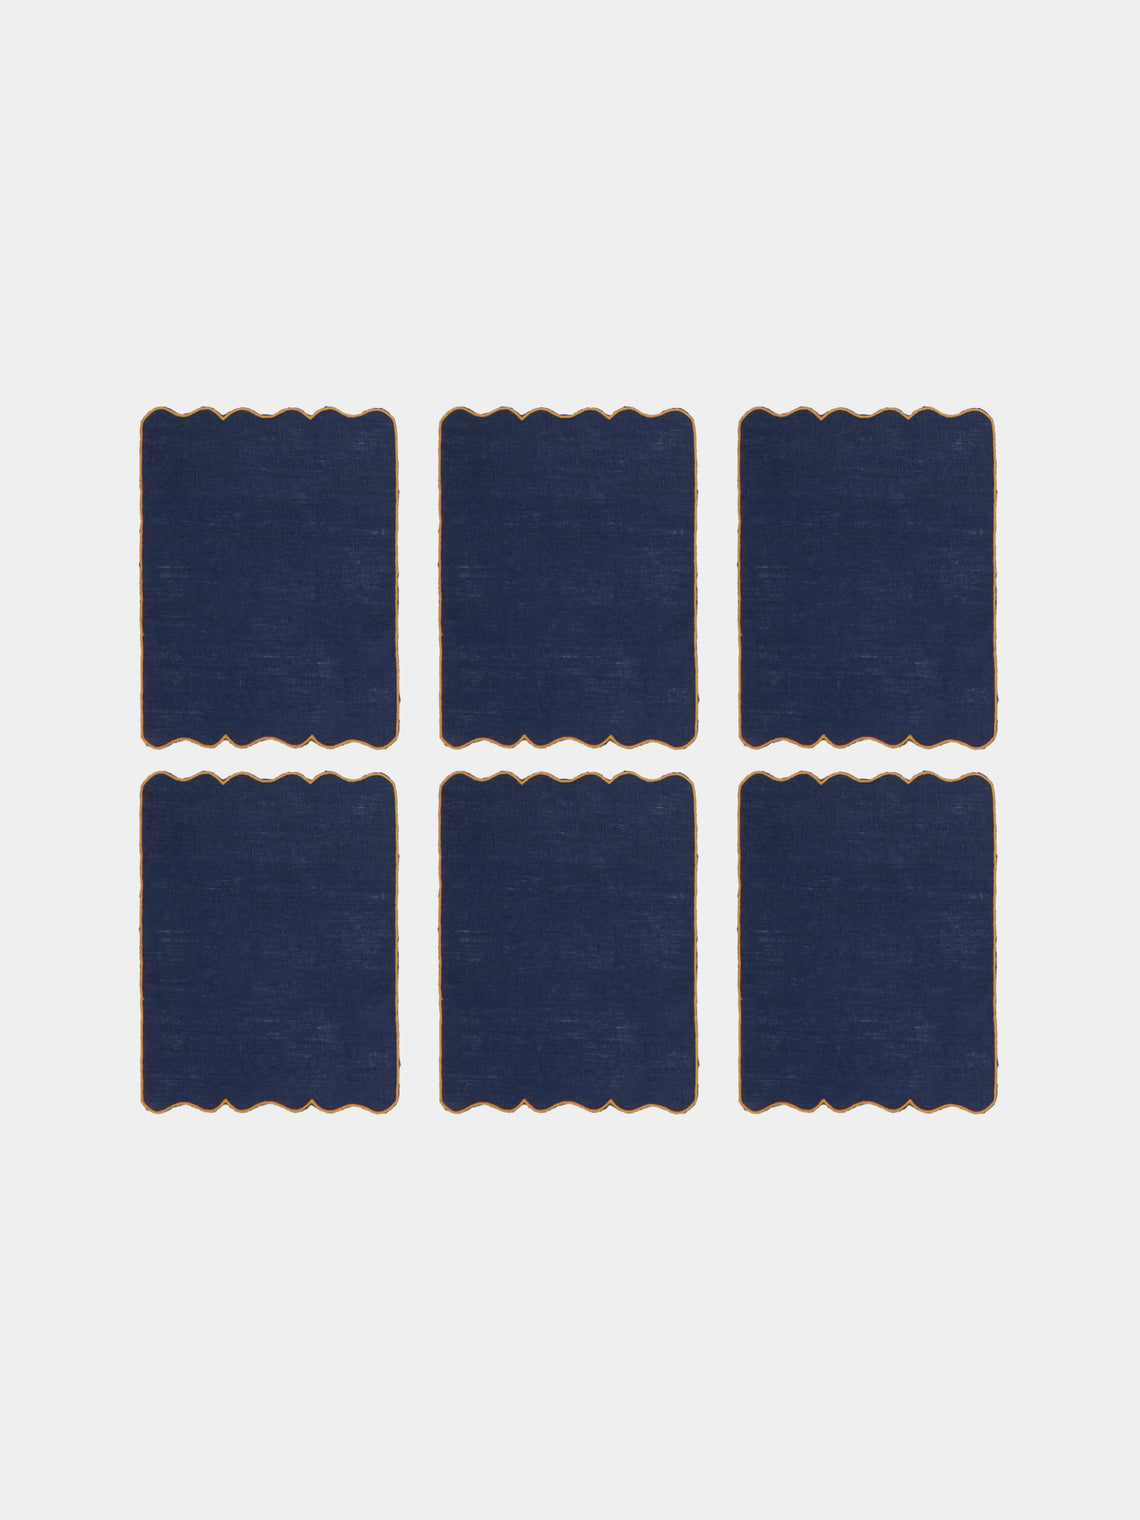 Los Encajeros - Valver Embroidered Linen Cocktail Napkins (Set of 6) - Blue - ABASK